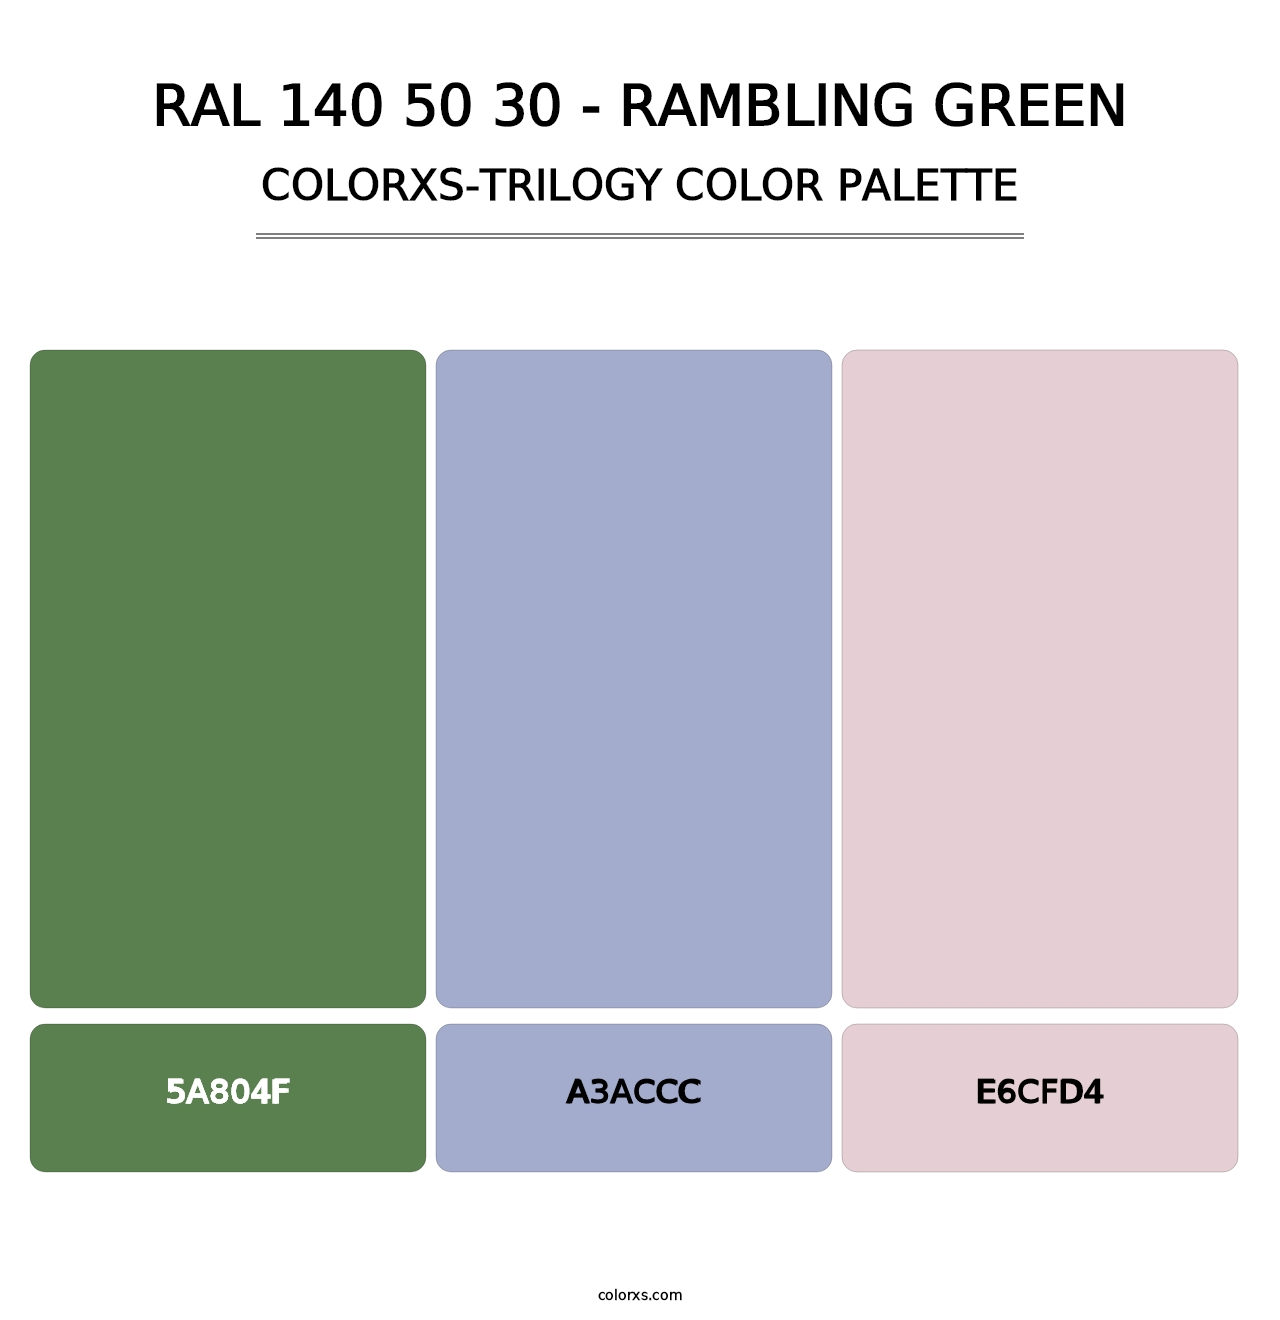 RAL 140 50 30 - Rambling Green - Colorxs Trilogy Palette